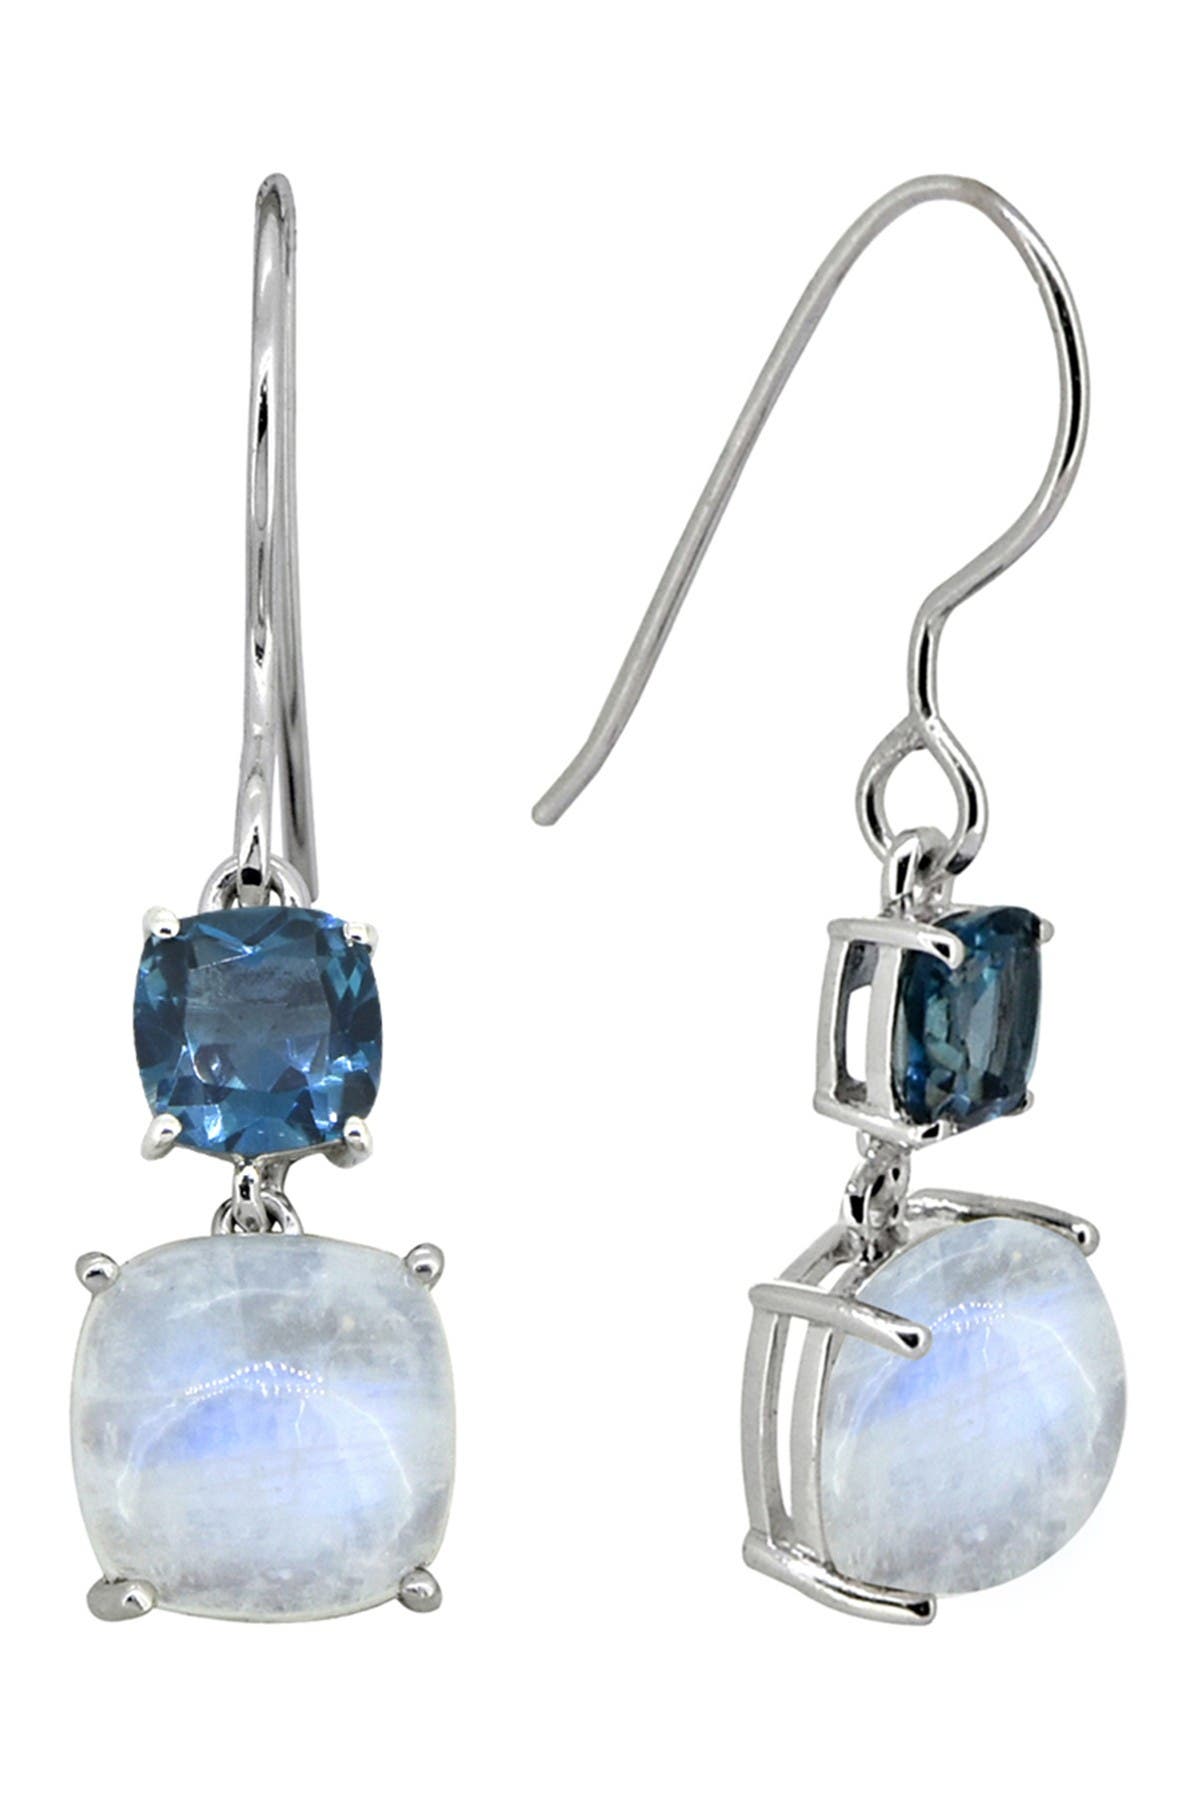 Blue Topaz gemstone earrings jewelry 2.16 925 Sterling Silver Rainbow moonstone